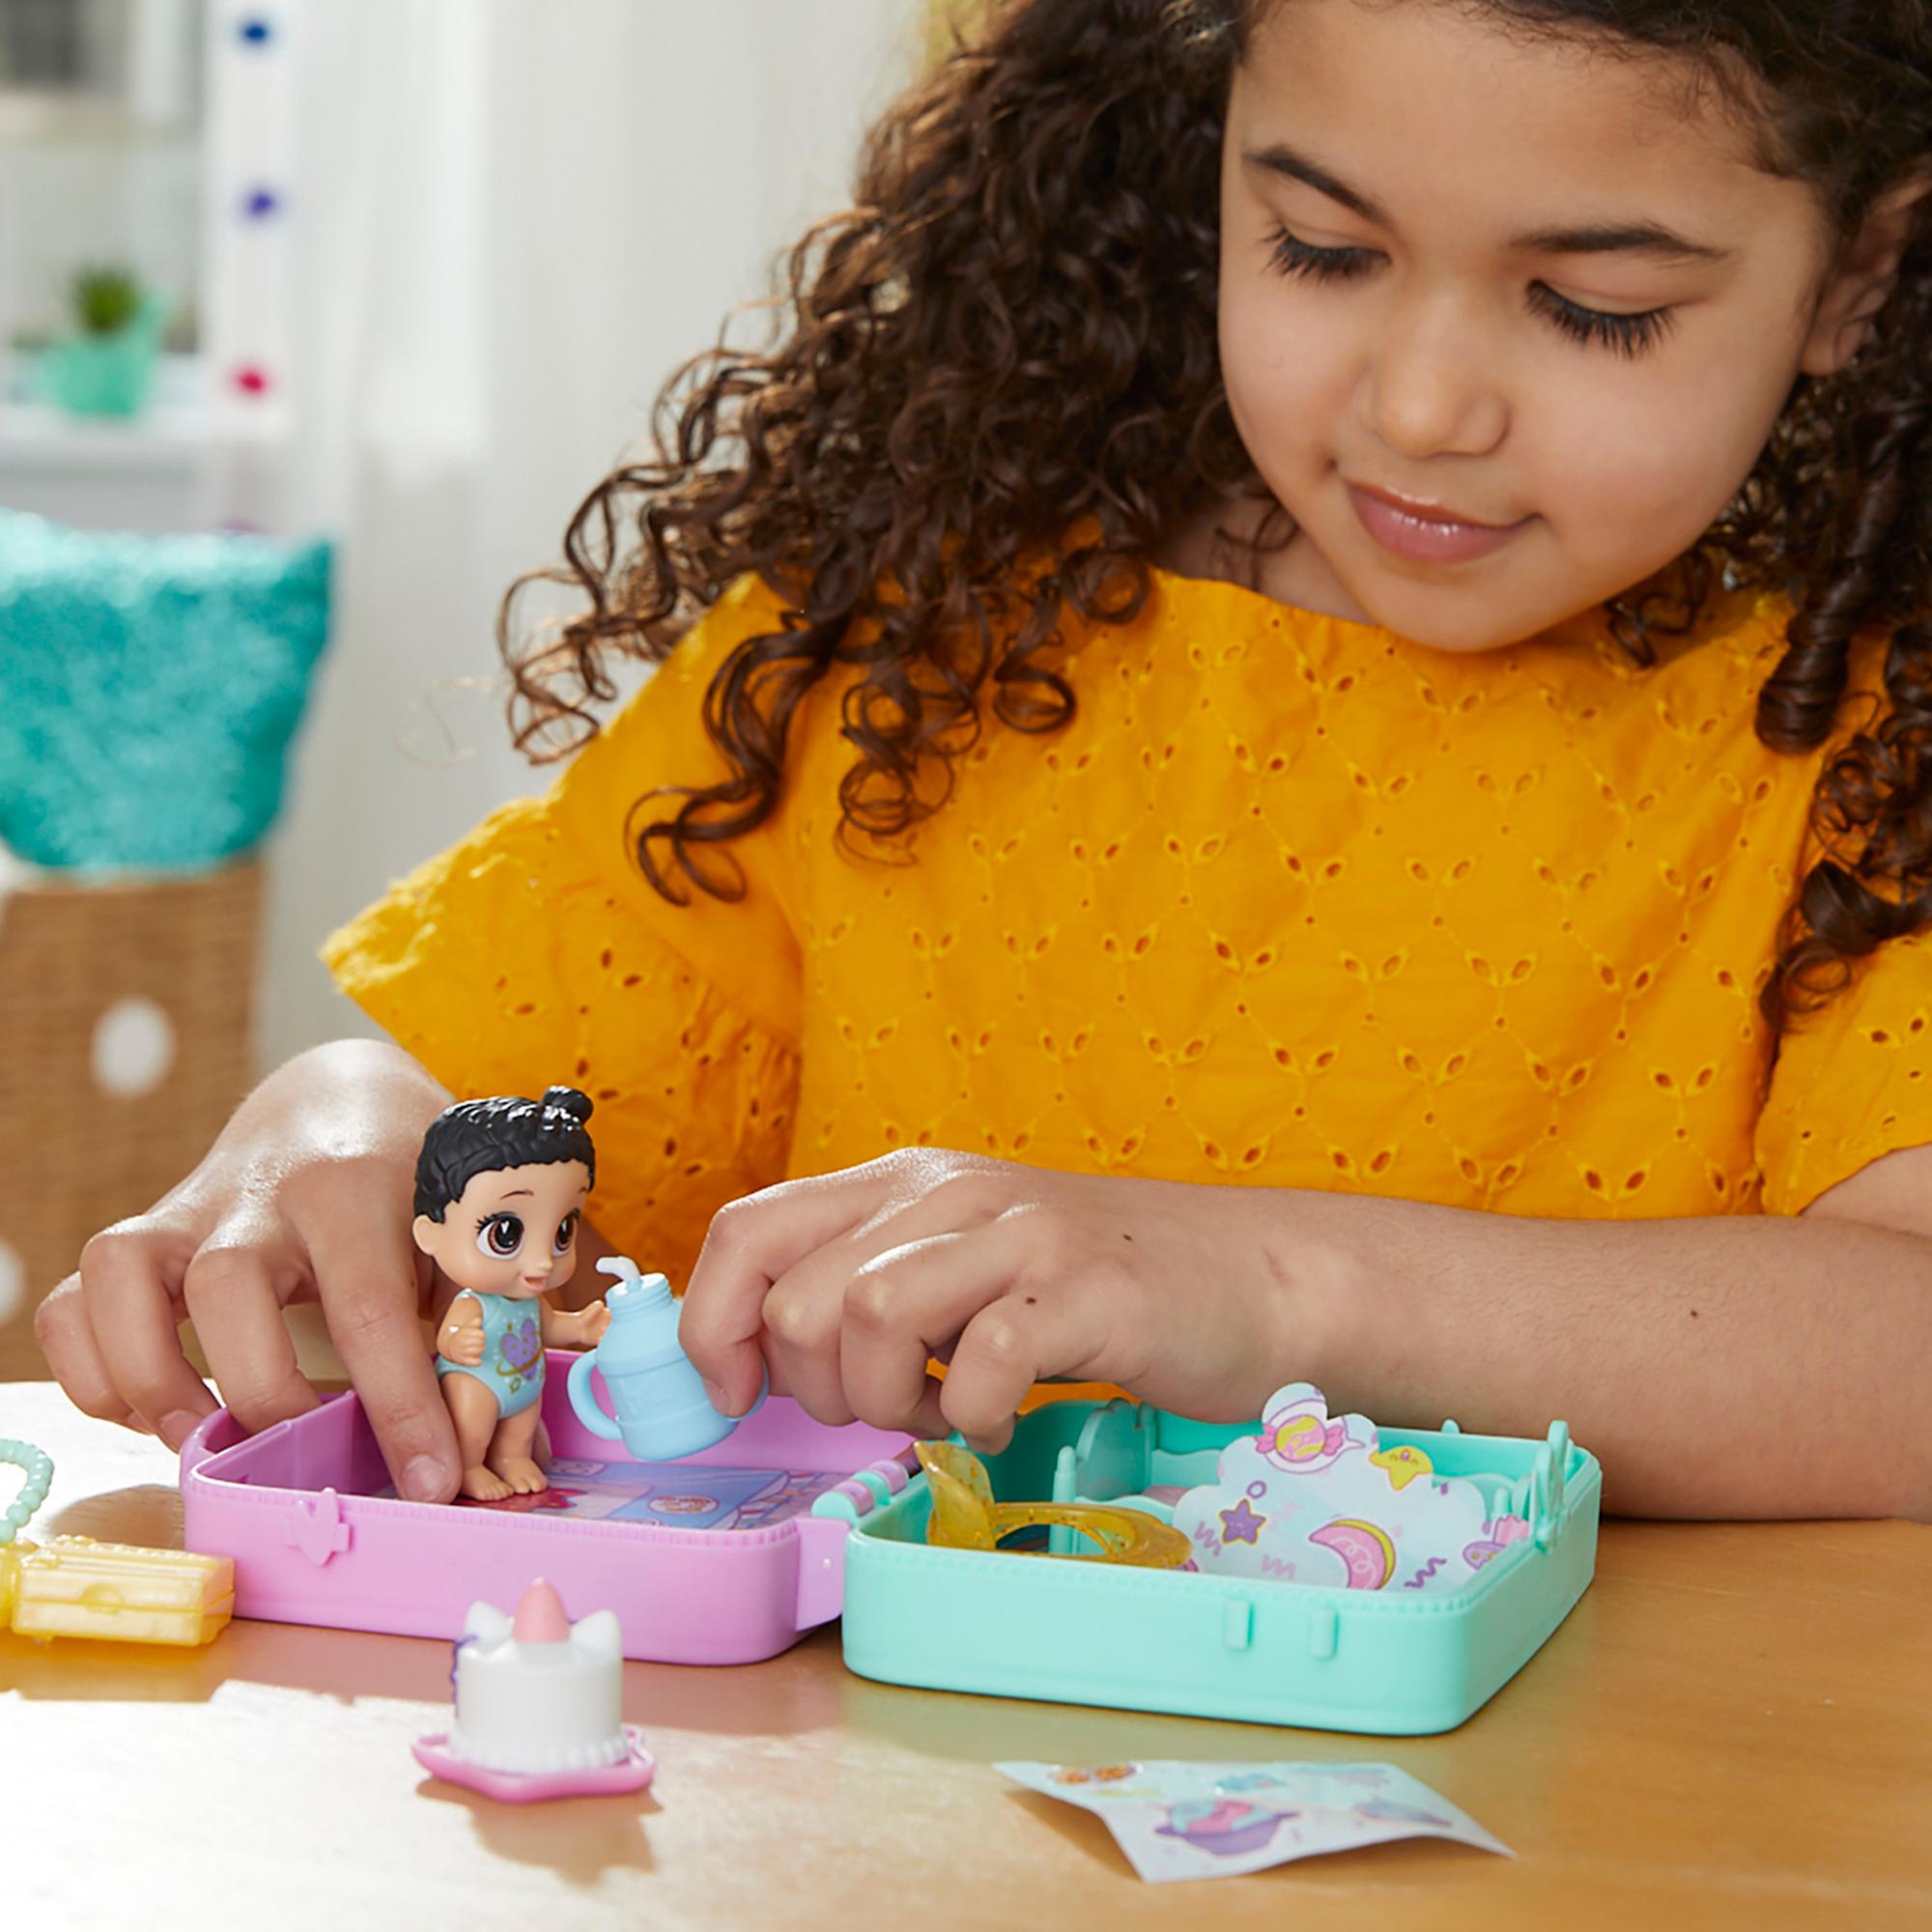 Baby Alive Foodie Cuties, botella, Sun Series 1, juguetes sorpresa para  niñas, juego de muñecas de bebé, 3 pulgadas, niños de 3 años en adelante